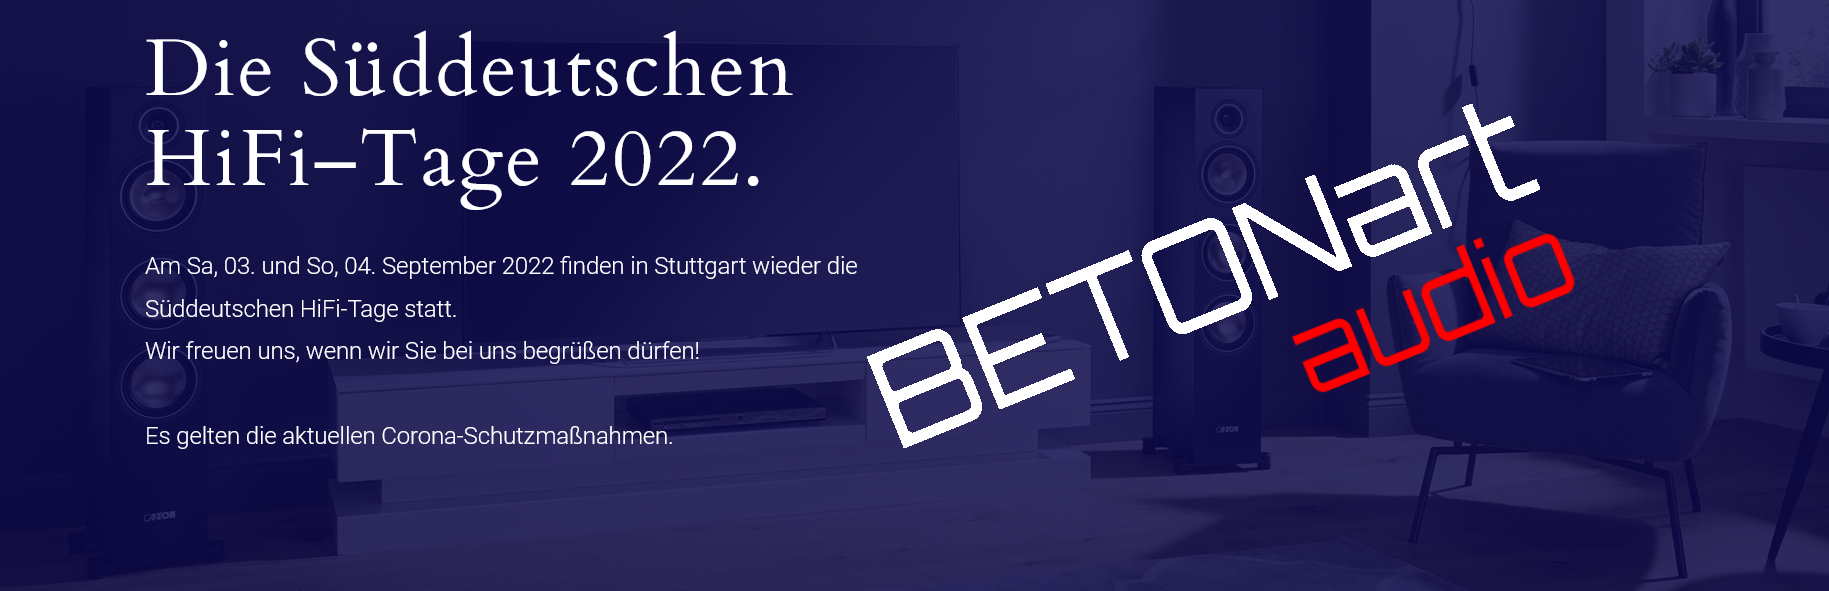 Süddeutsche HiFi-Tage 2022 9